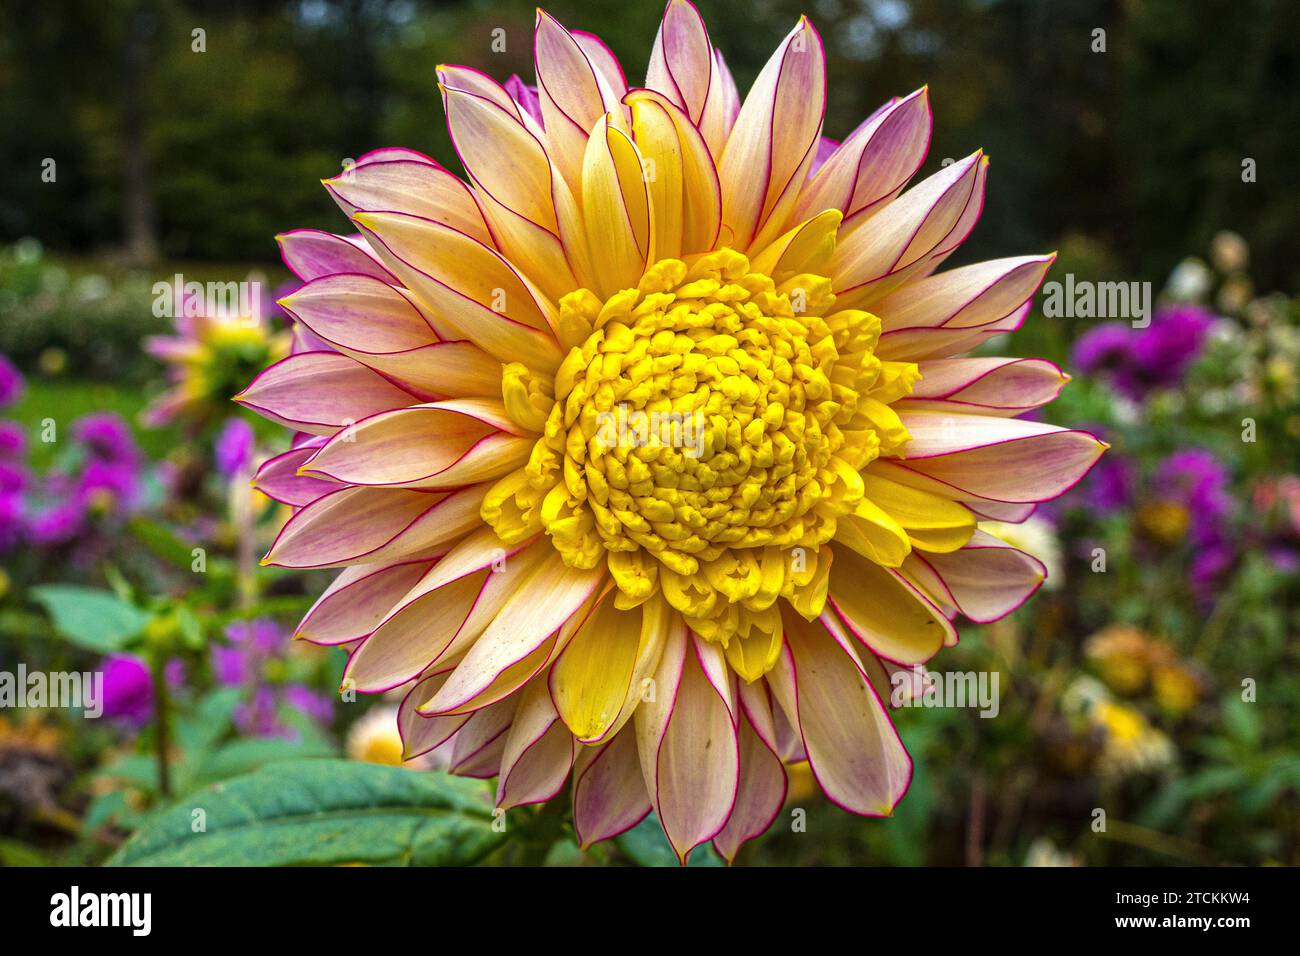 Wunderschöne Dahlienblume in Gelb, Rosa und anderen Farben gemischt Stockfoto